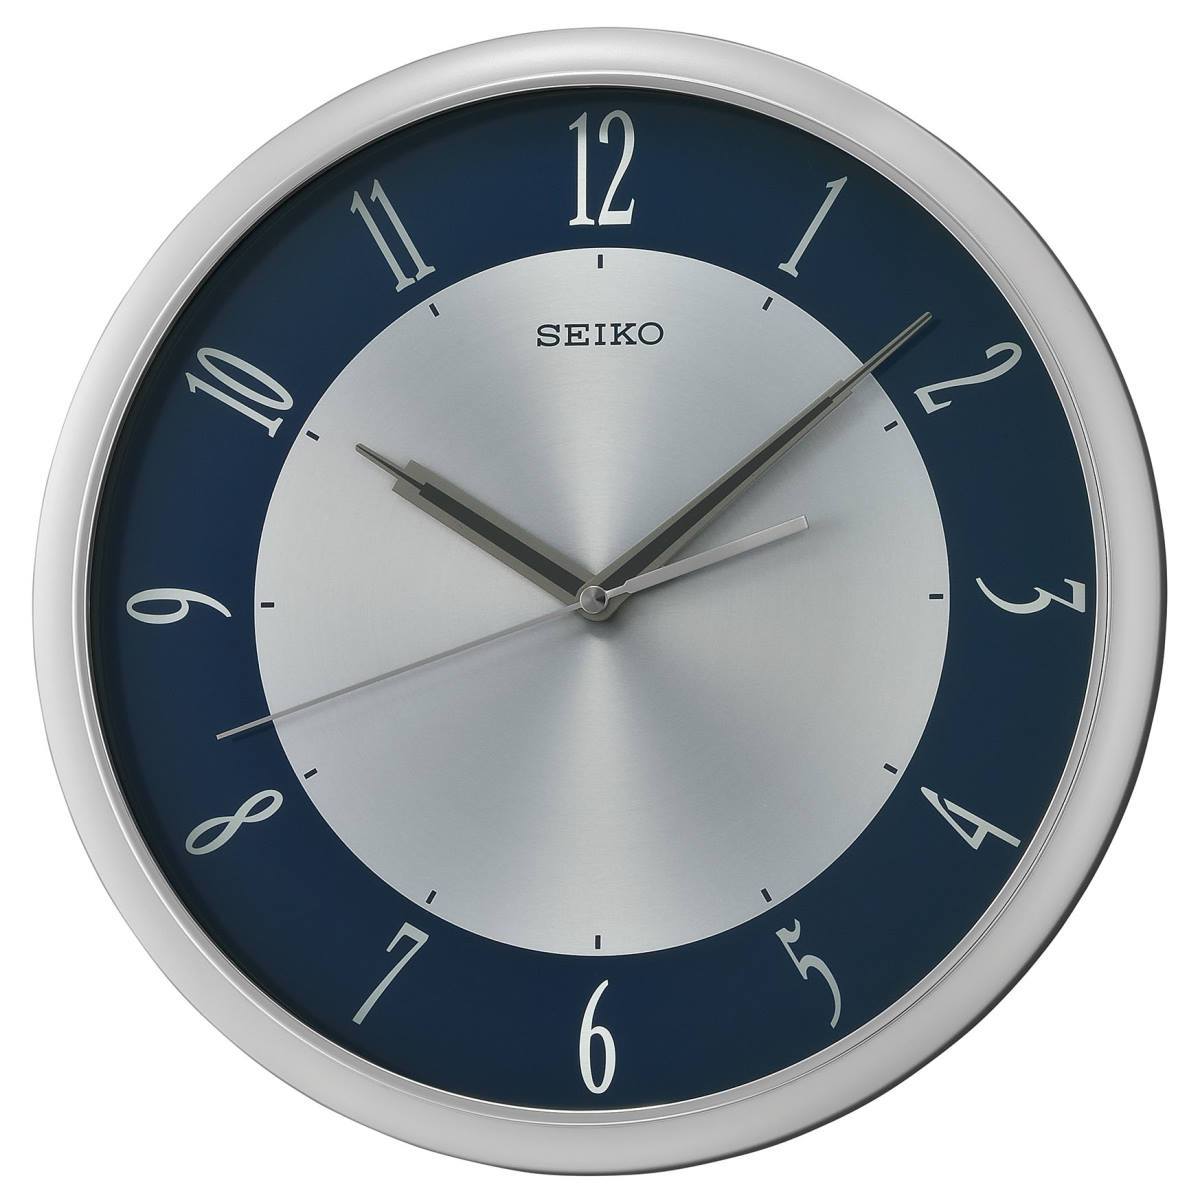 Настольные часы Seiko qhl054sn. Настенные часы Seiko qhl077wn. Qxh102b часы Seiko. Часы SN 084-G. Часы 31 15